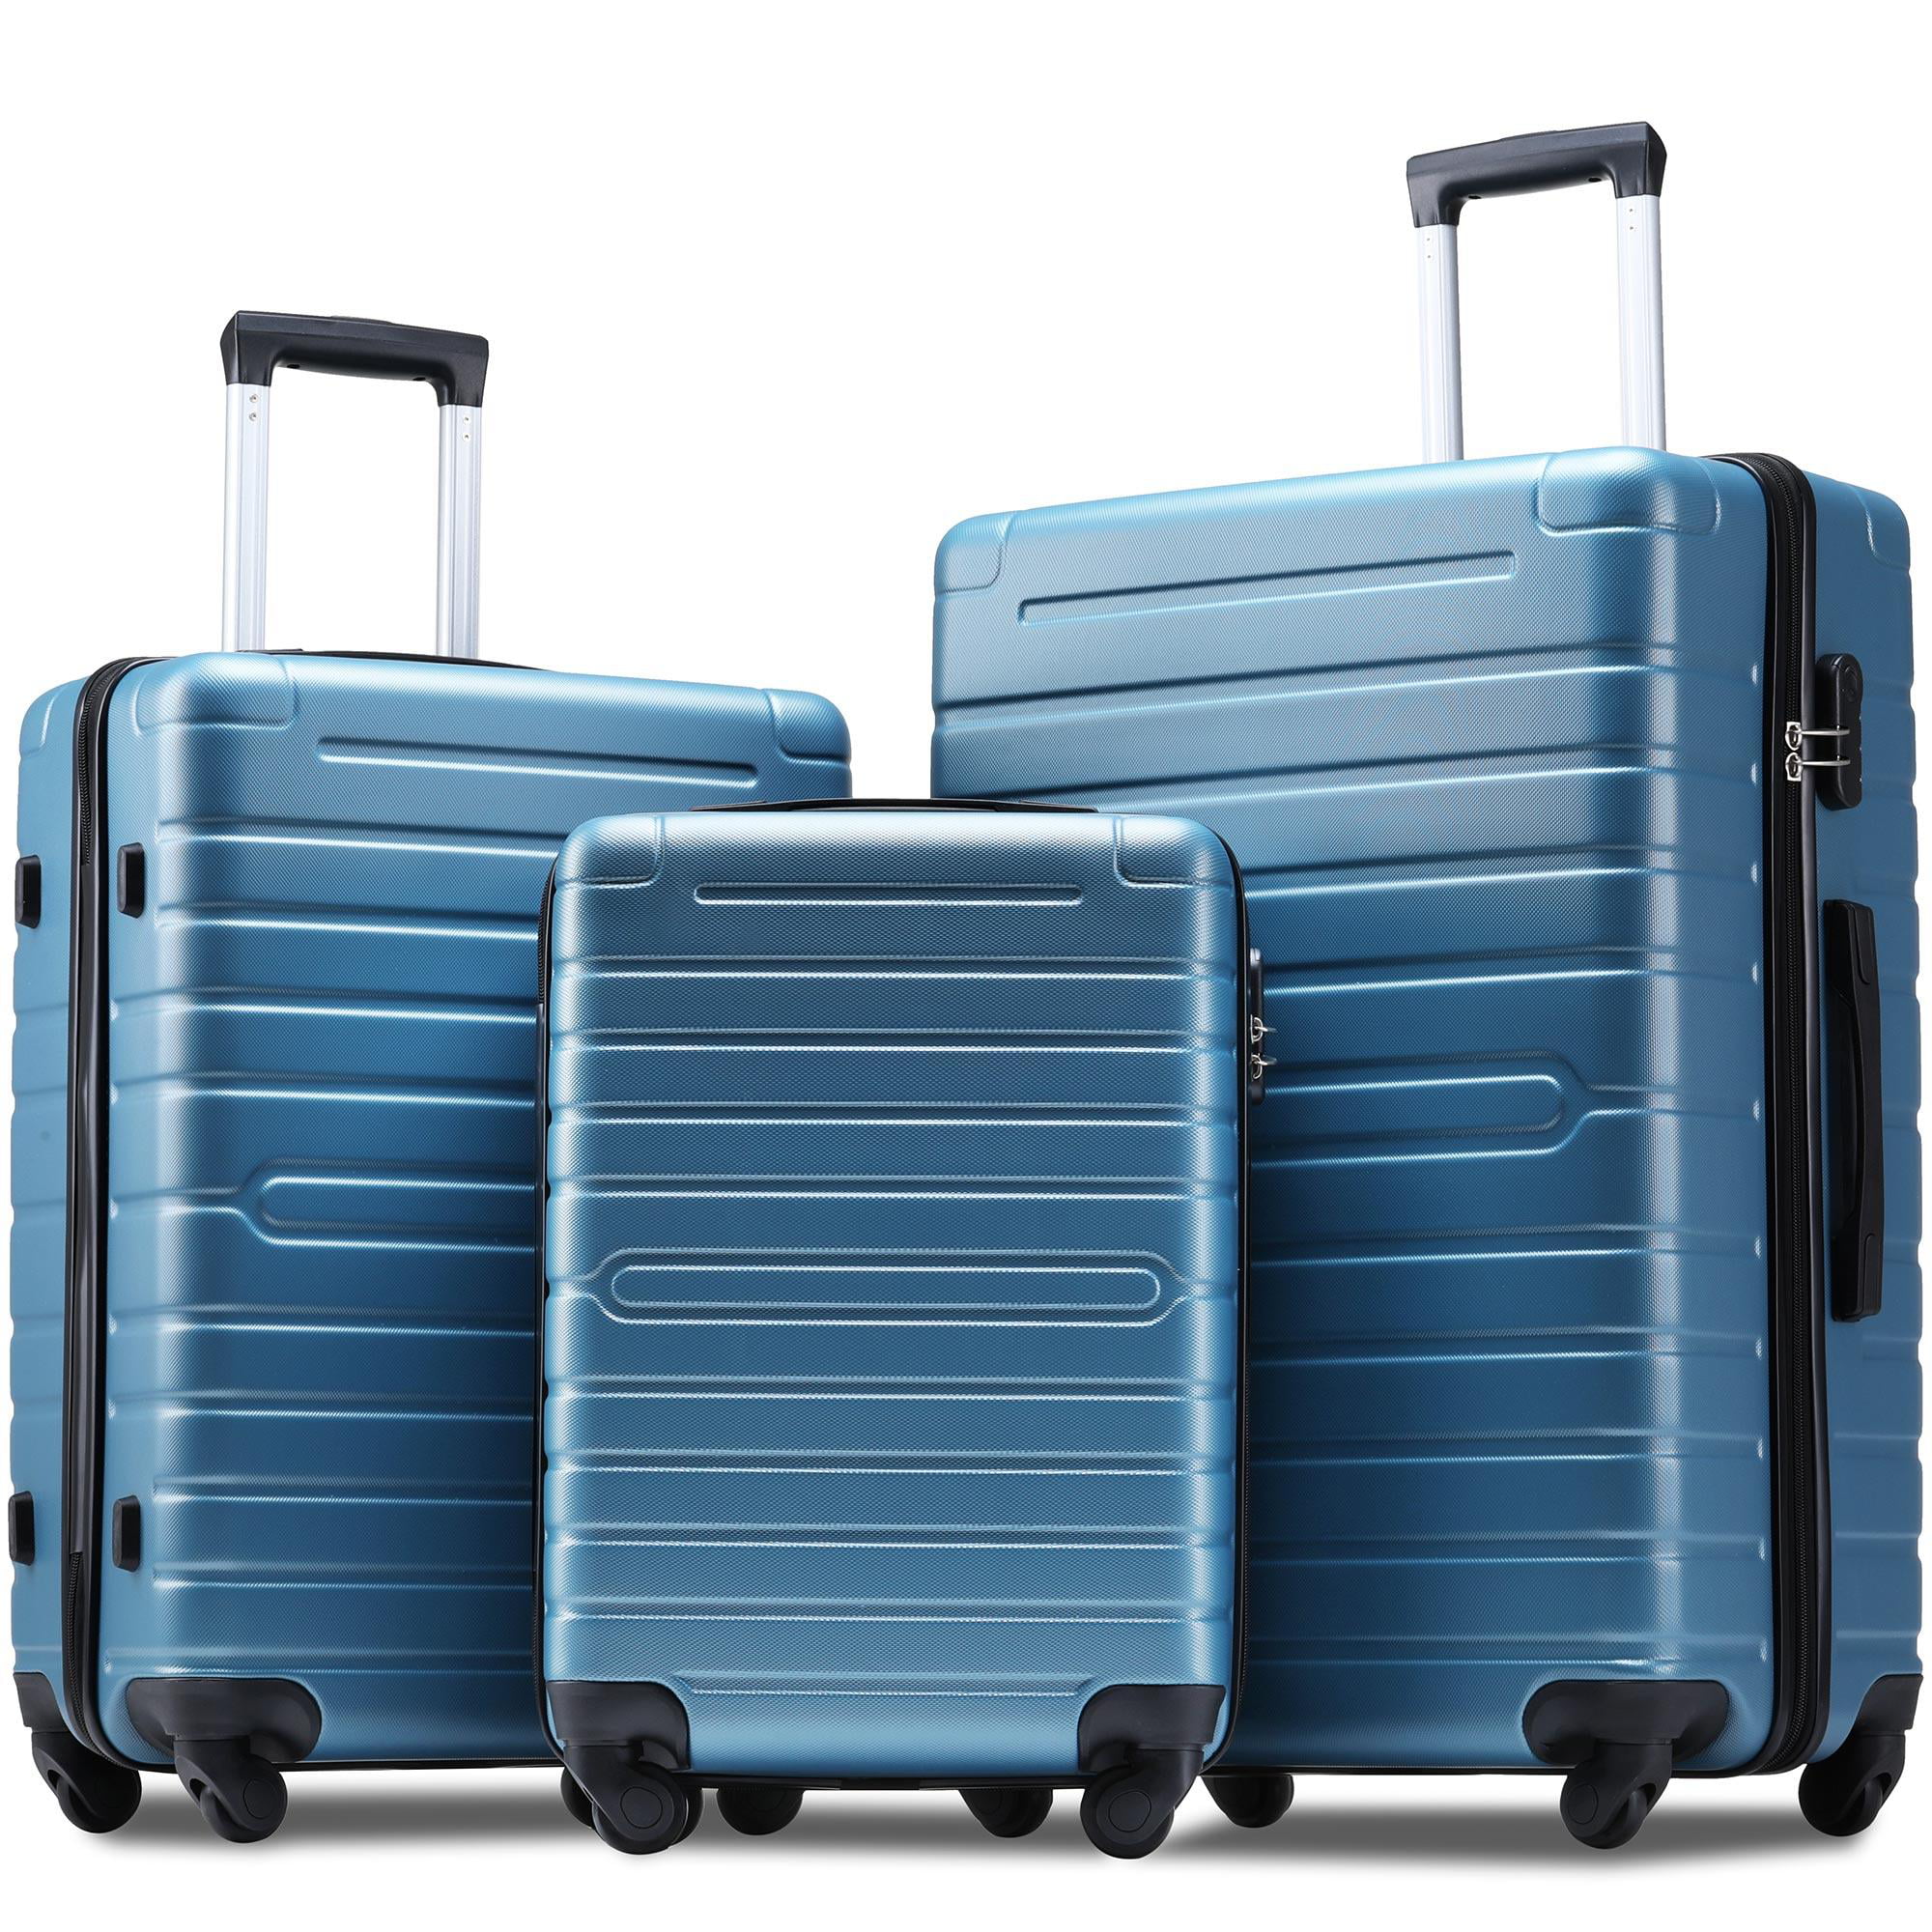 Hardshell Luggage Sets 3 Piece Spinner Suitcase with TSA Lock ...